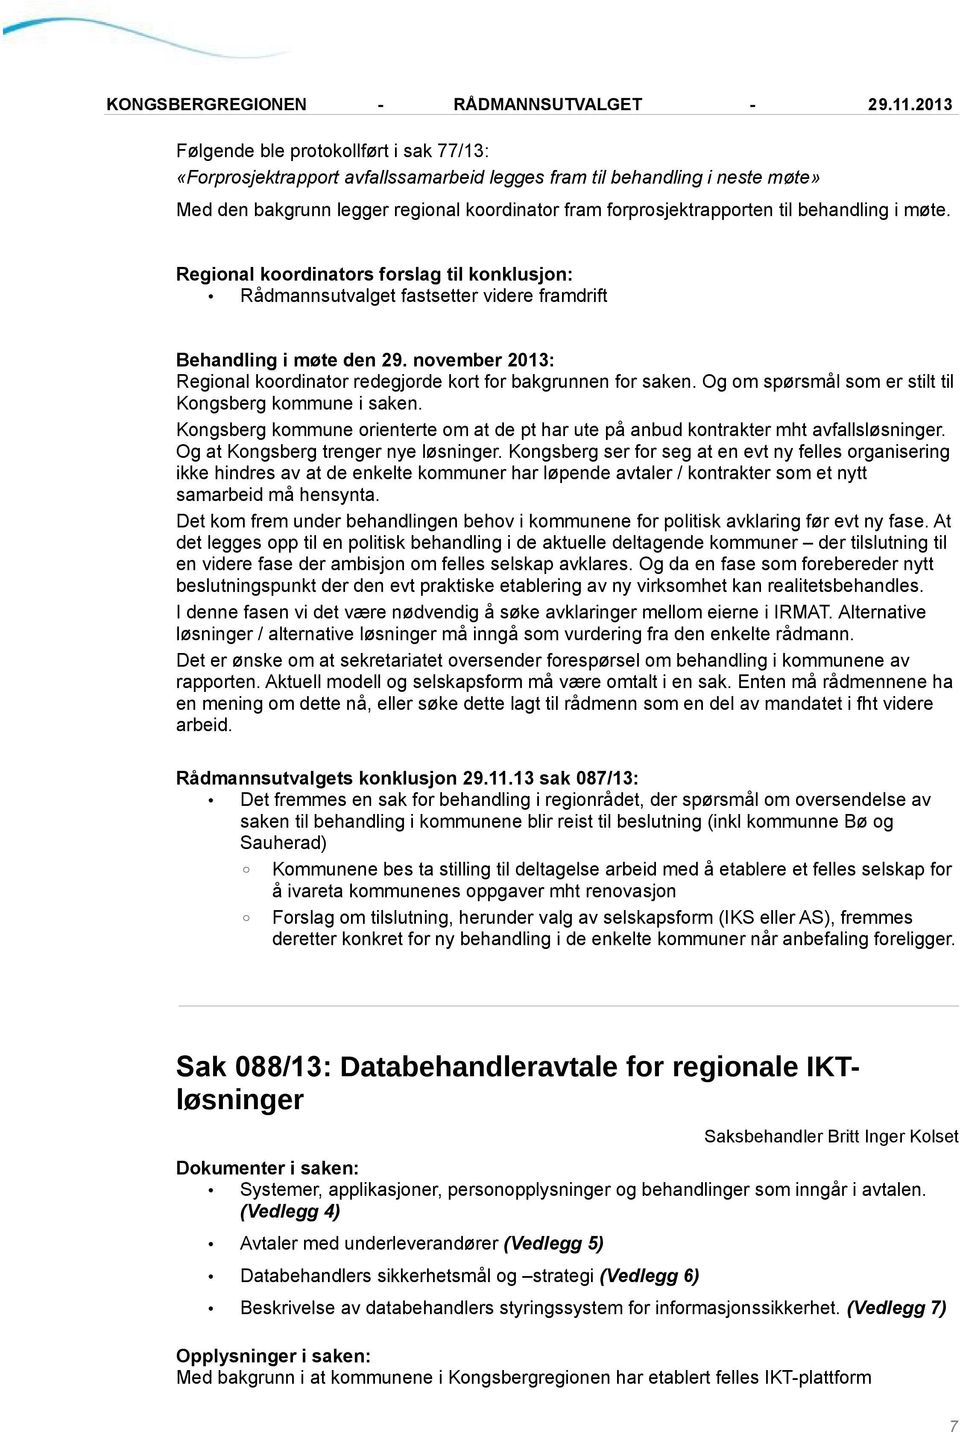 Kongsberg kommune orienterte om at de pt har ute på anbud kontrakter mht avfallsløsninger. Og at Kongsberg trenger nye løsninger.